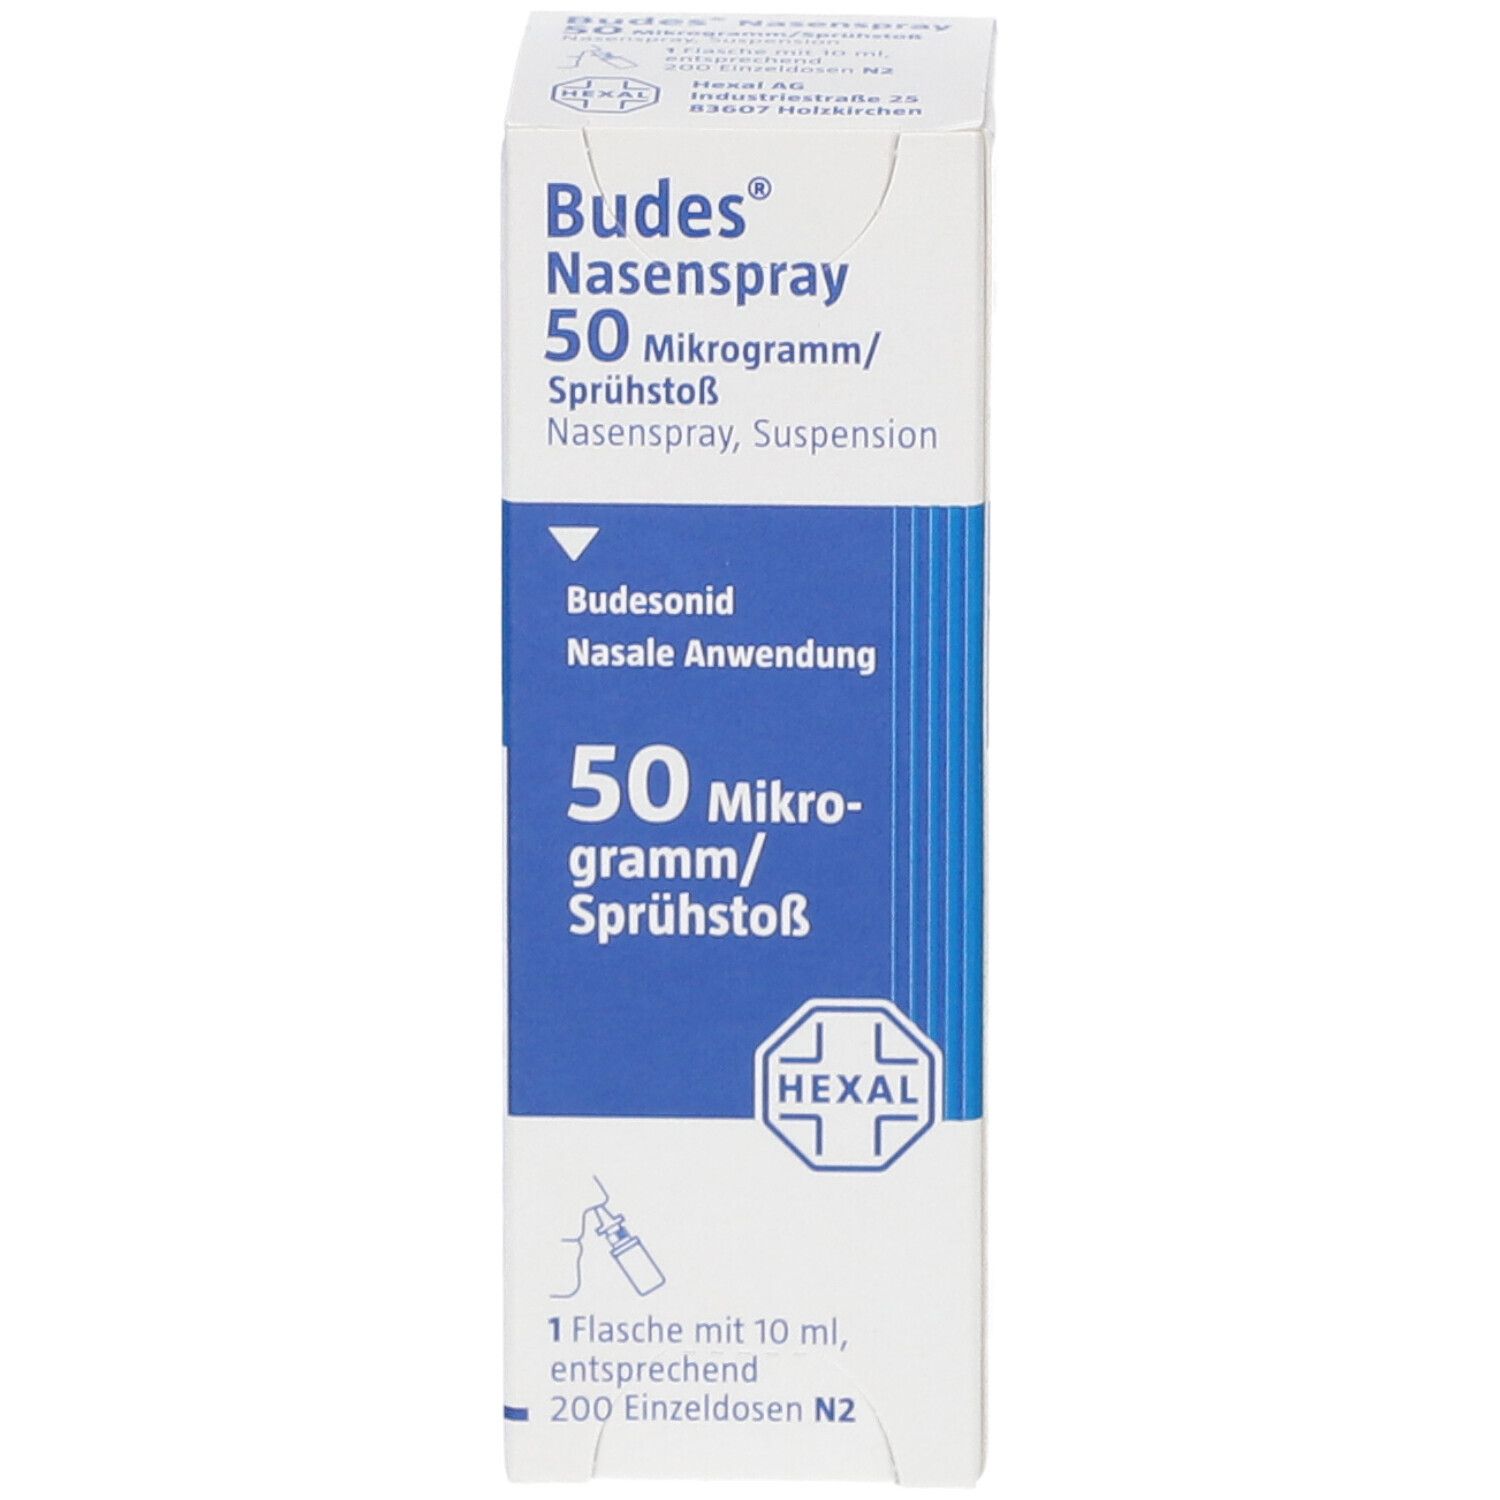 Budes® Nasenspray 50 μg/Sprühstoß